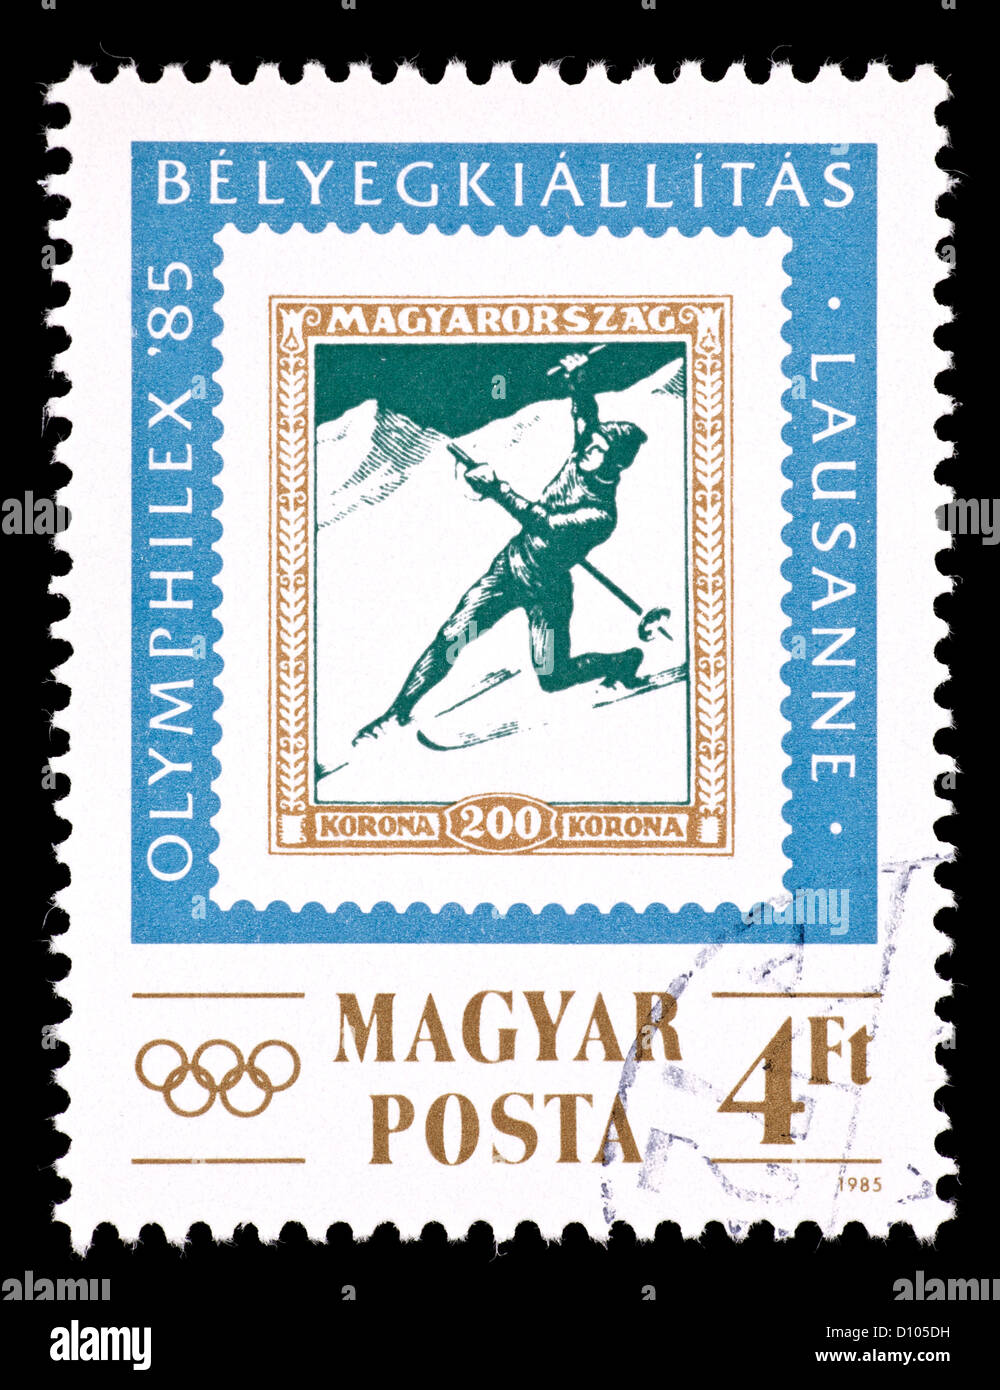 Timbre-poste de Hongrie représentant un timbre hongrois doté d''un skieur, émis pour OLYMPHILEX, 1985, Lausanne. Banque D'Images